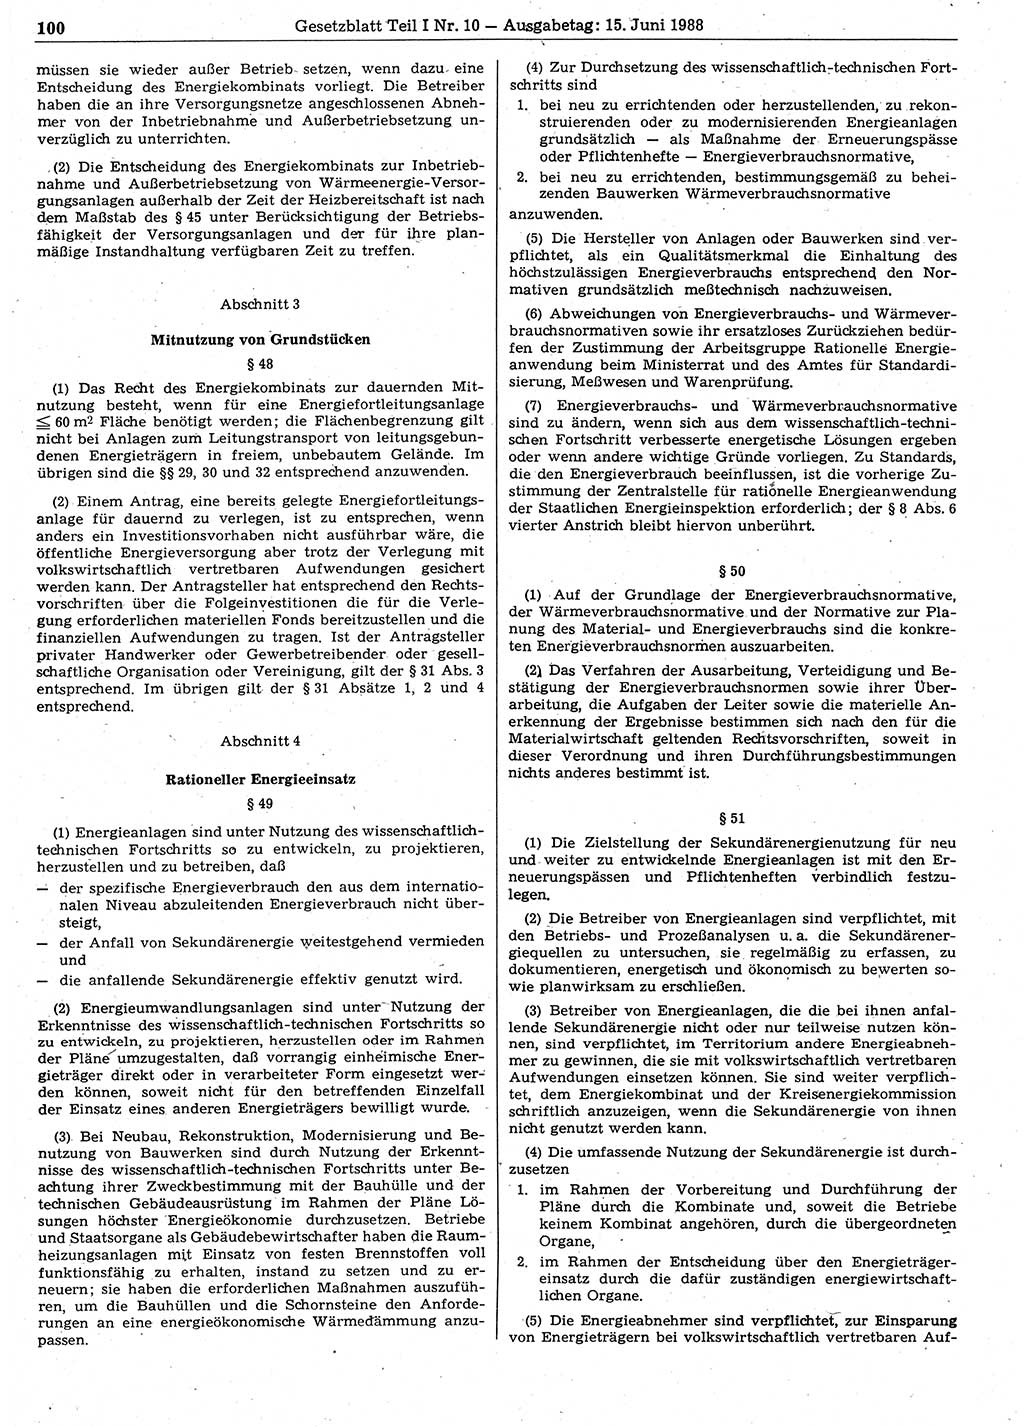 Gesetzblatt (GBl.) der Deutschen Demokratischen Republik (DDR) Teil Ⅰ 1988, Seite 100 (GBl. DDR Ⅰ 1988, S. 100)